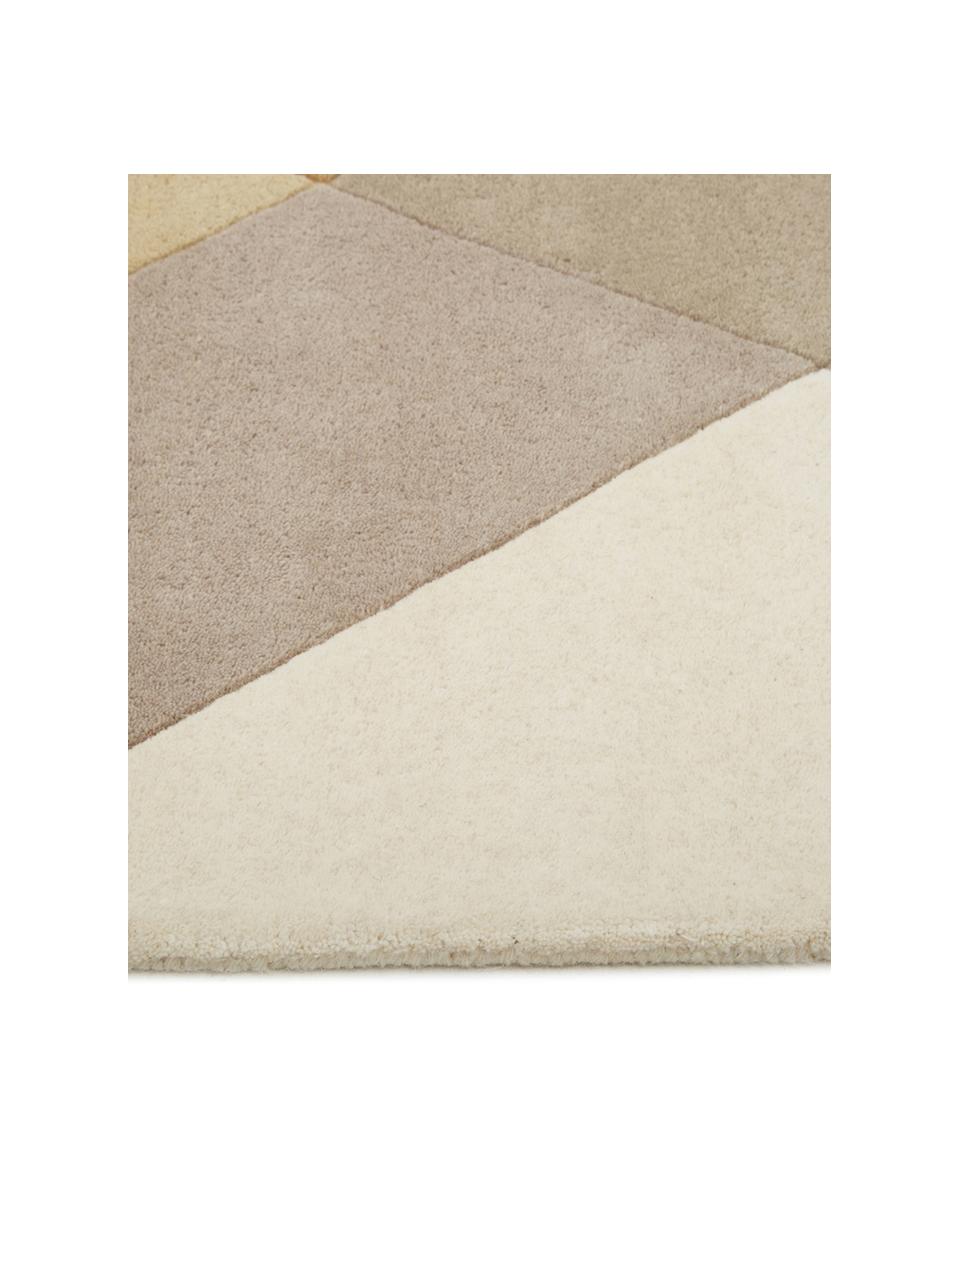 Designový ručně všívaný vlněný koberec Freya, Hořčičná žlutá, béžová, šedá, hnědá